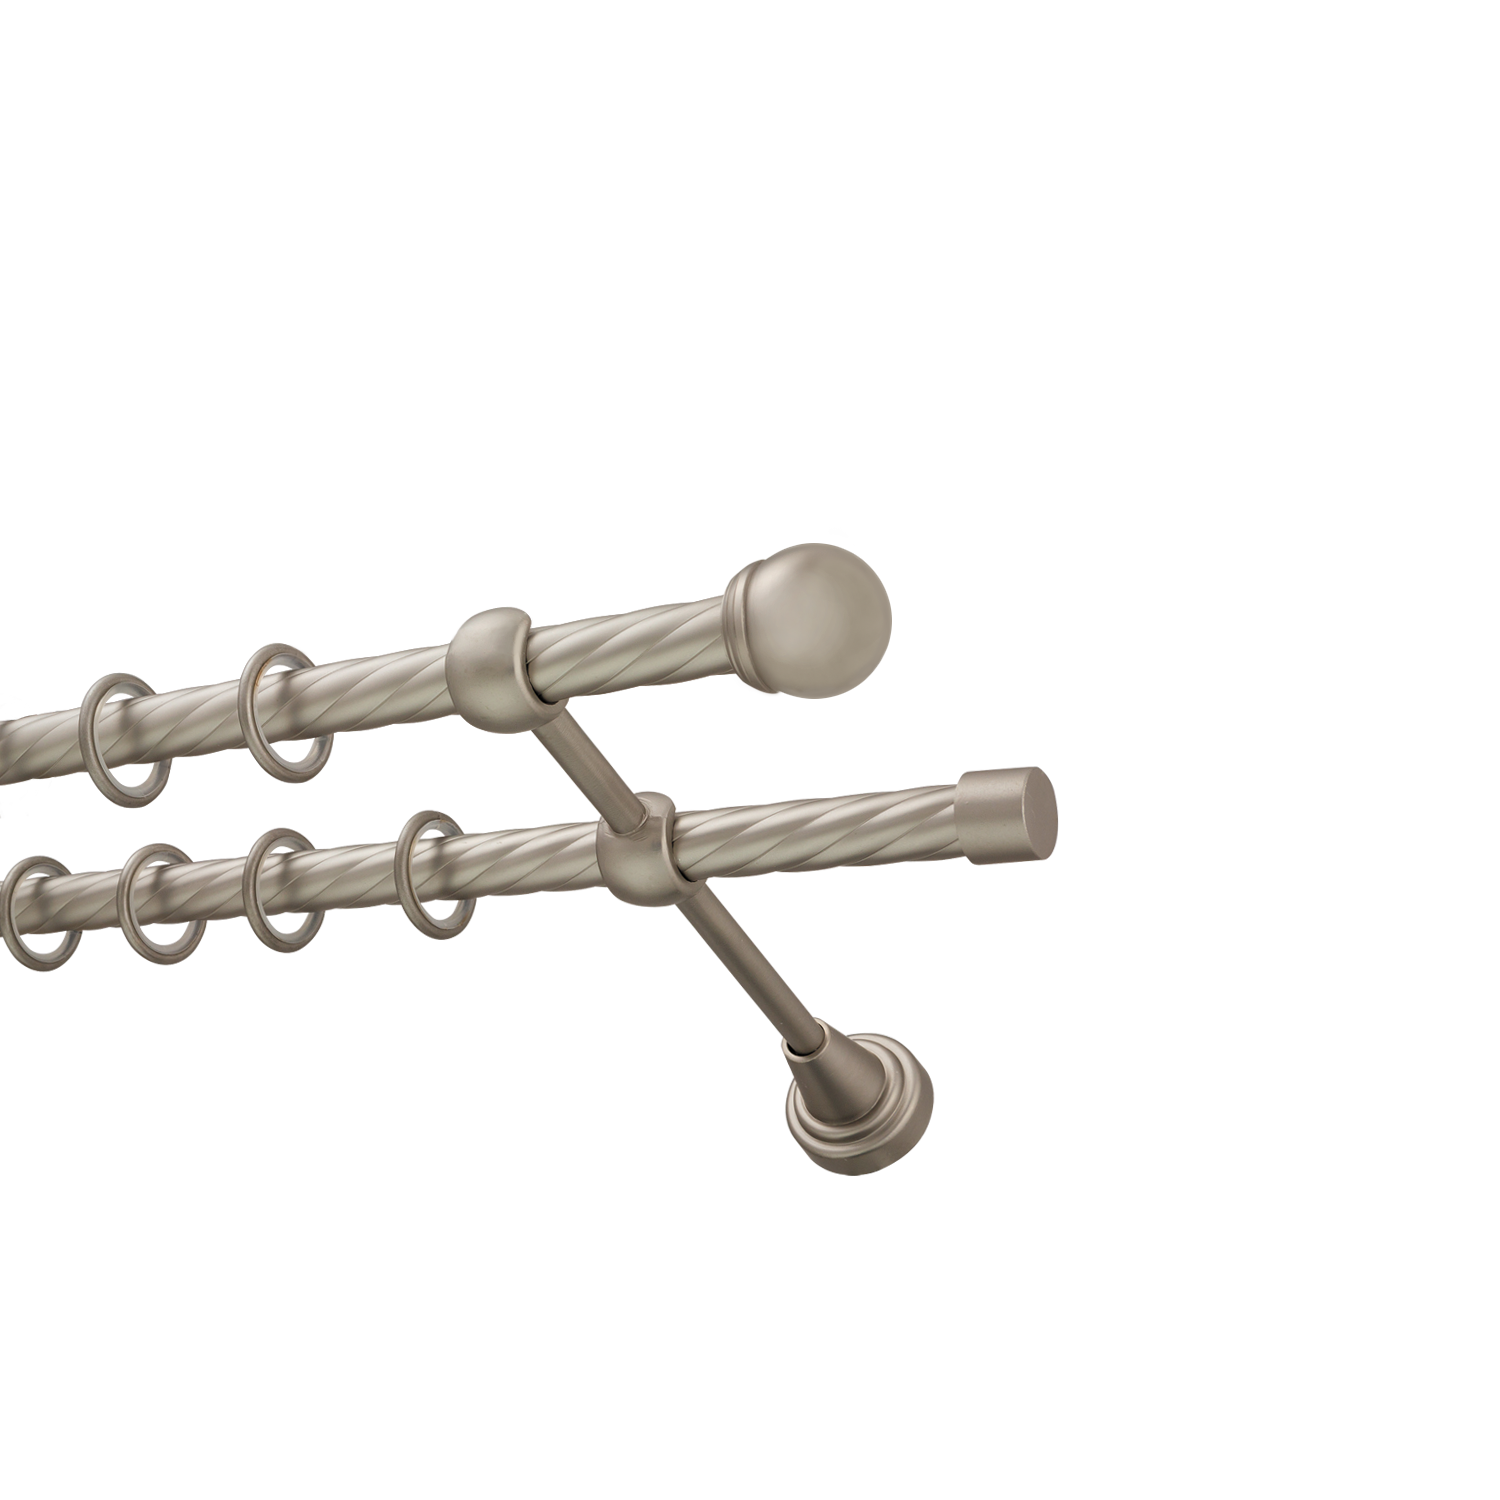 Металлический карниз для штор Вива, двухрядный 16/16 мм, сталь, витая штанга, длина 180 см - фото Wikidecor.ru